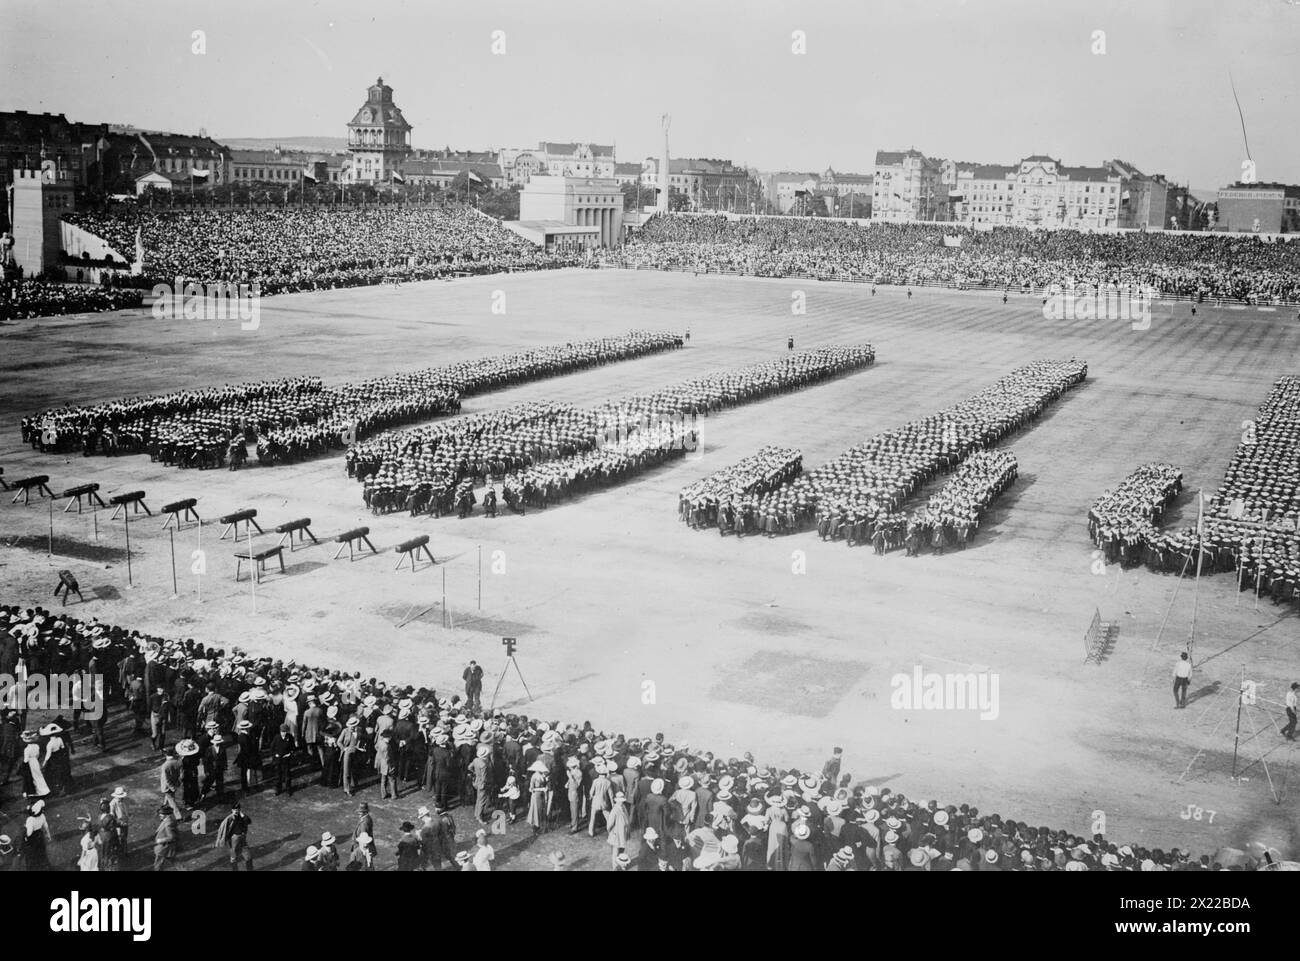 6000 Mädchen bei Sokol Sports in Prag, Österreich, 1912. Zeigt junge Frauen, die in Ausbildung stehen, wahrscheinlich während des 6. Turnfestes Sokol Slet, das 1912 in Prag (damals Teil des österreichisch-ungarischen Reiches, heute in Tschechien) stattfand. Stockfoto